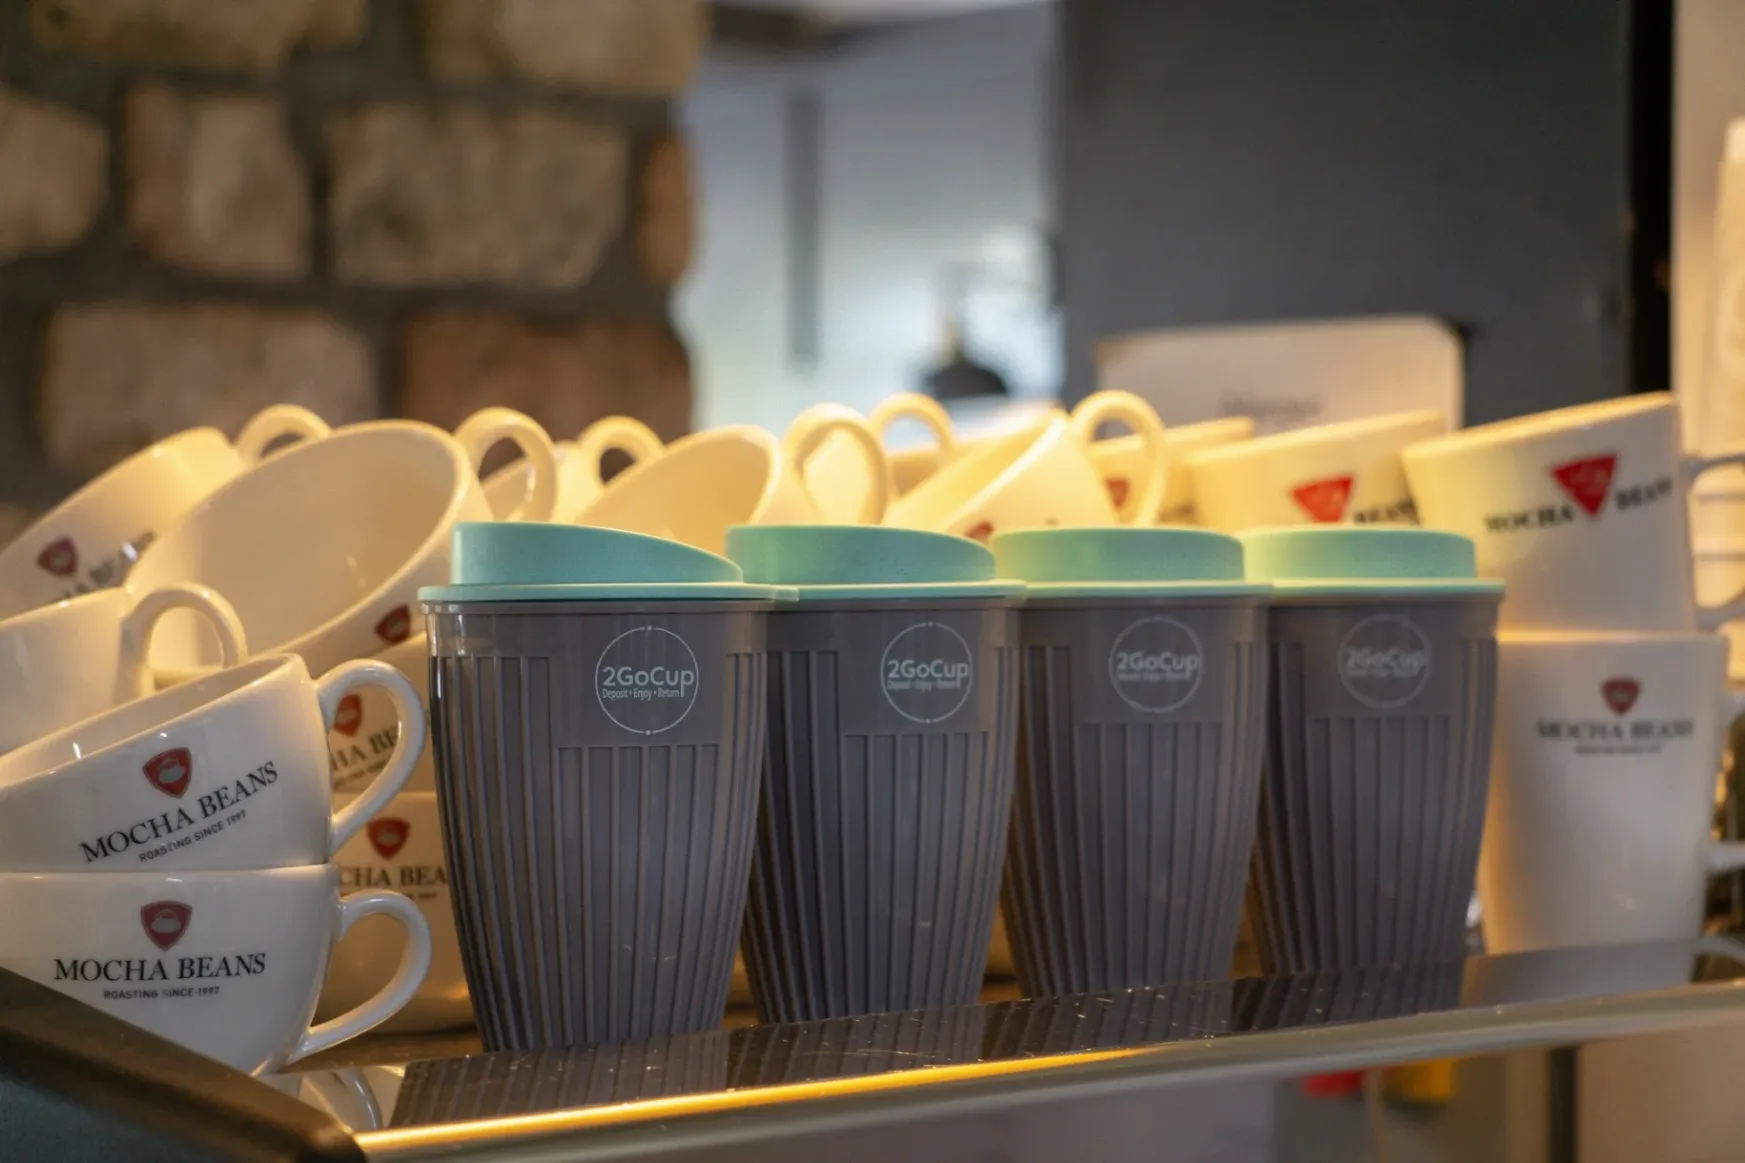 Egy ír kisváros leszámolt az eldobható kávéspoharakkal: a világ tanulhat a példájából